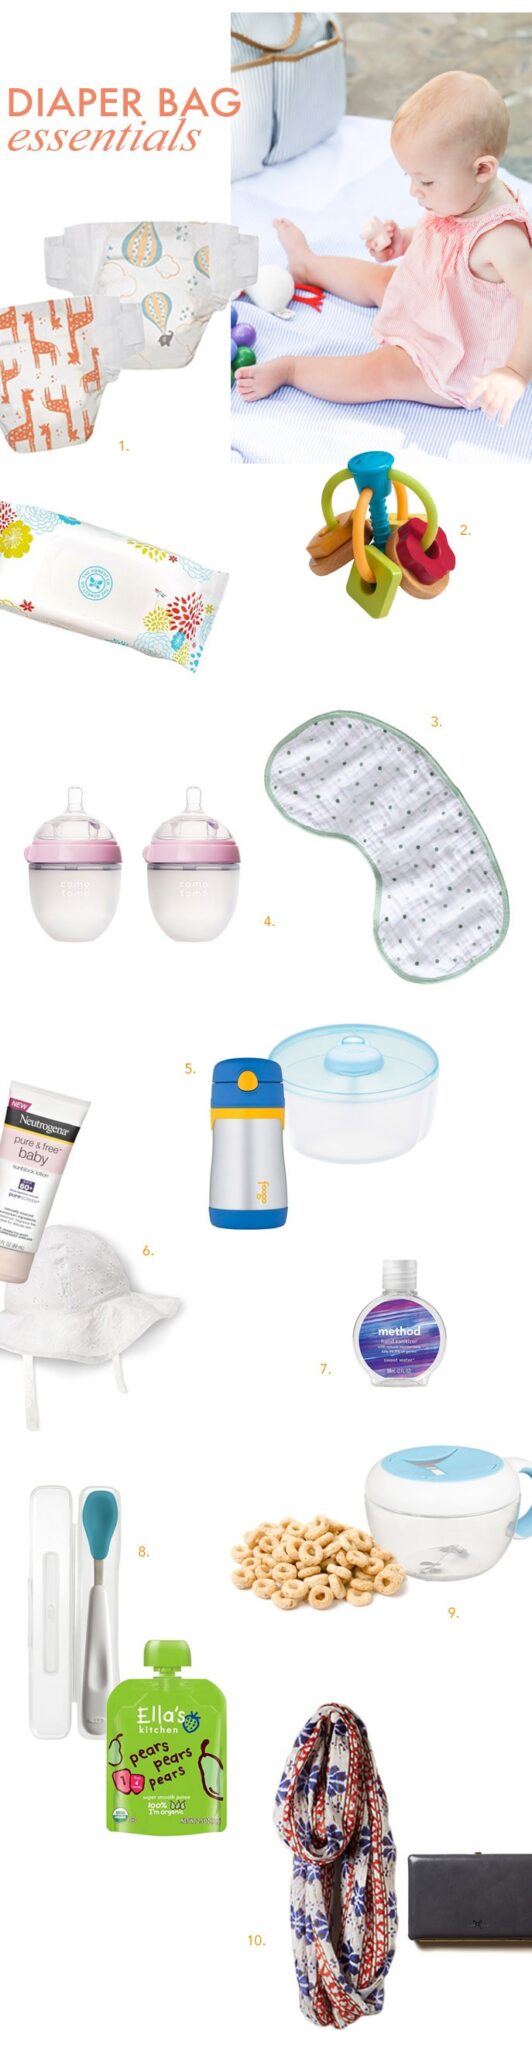 10 diaper bag essentials